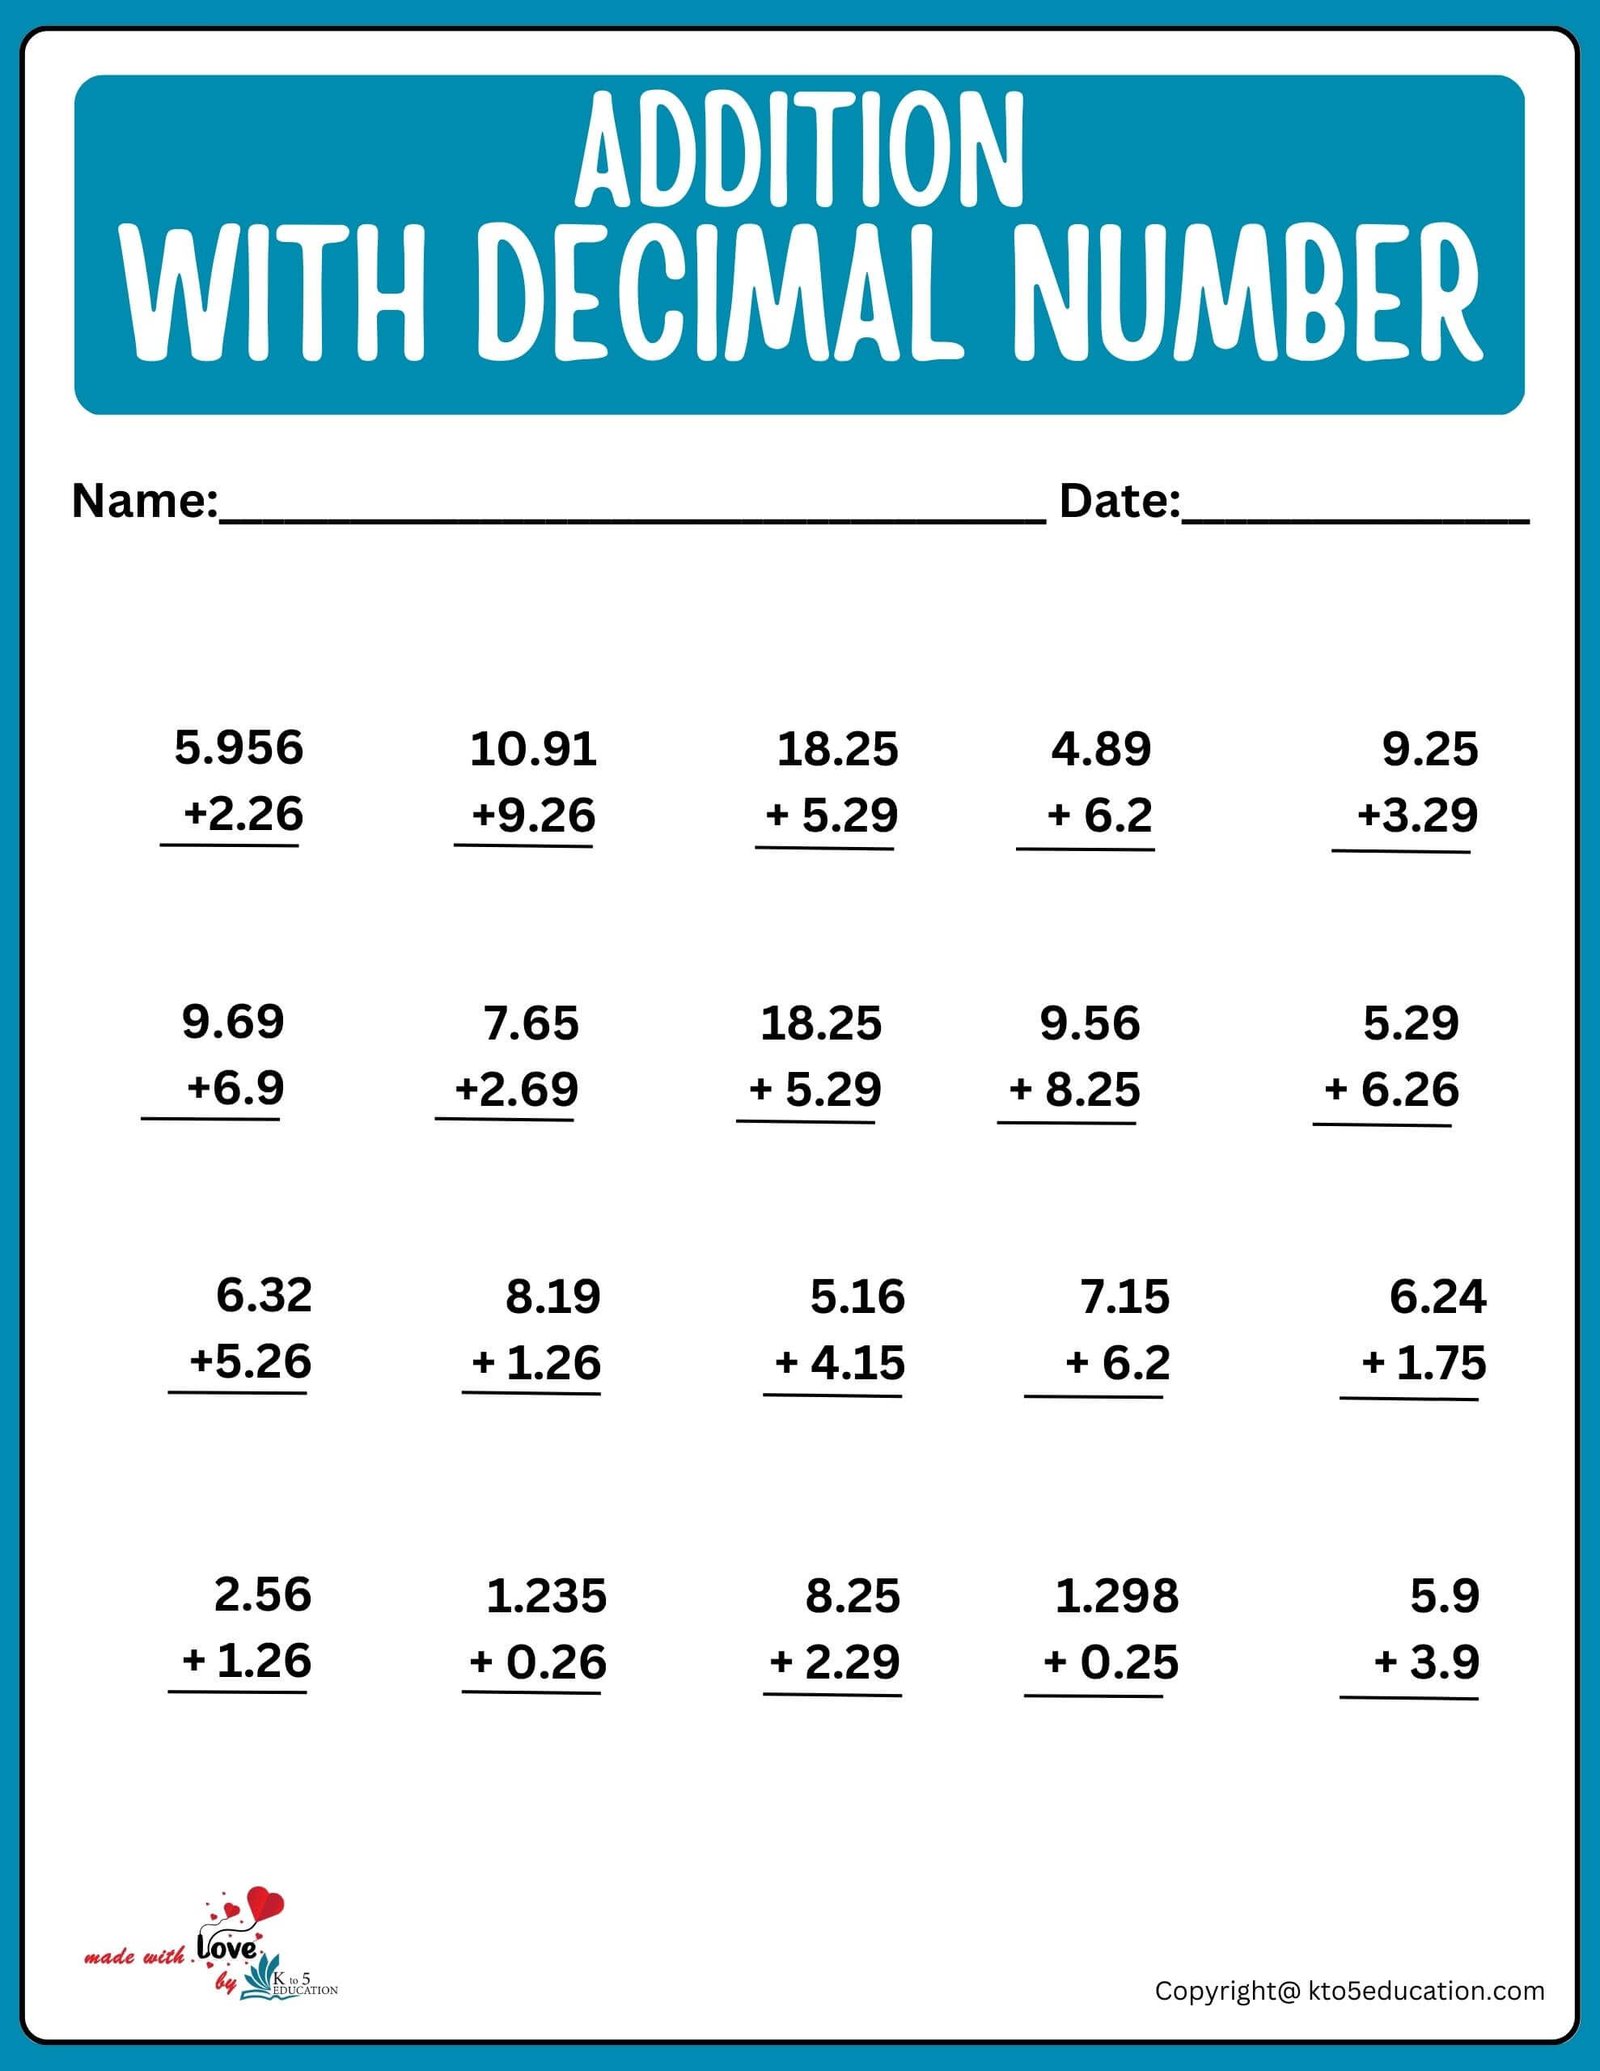 Decimal Number Addition Worksheet For 4th Grade